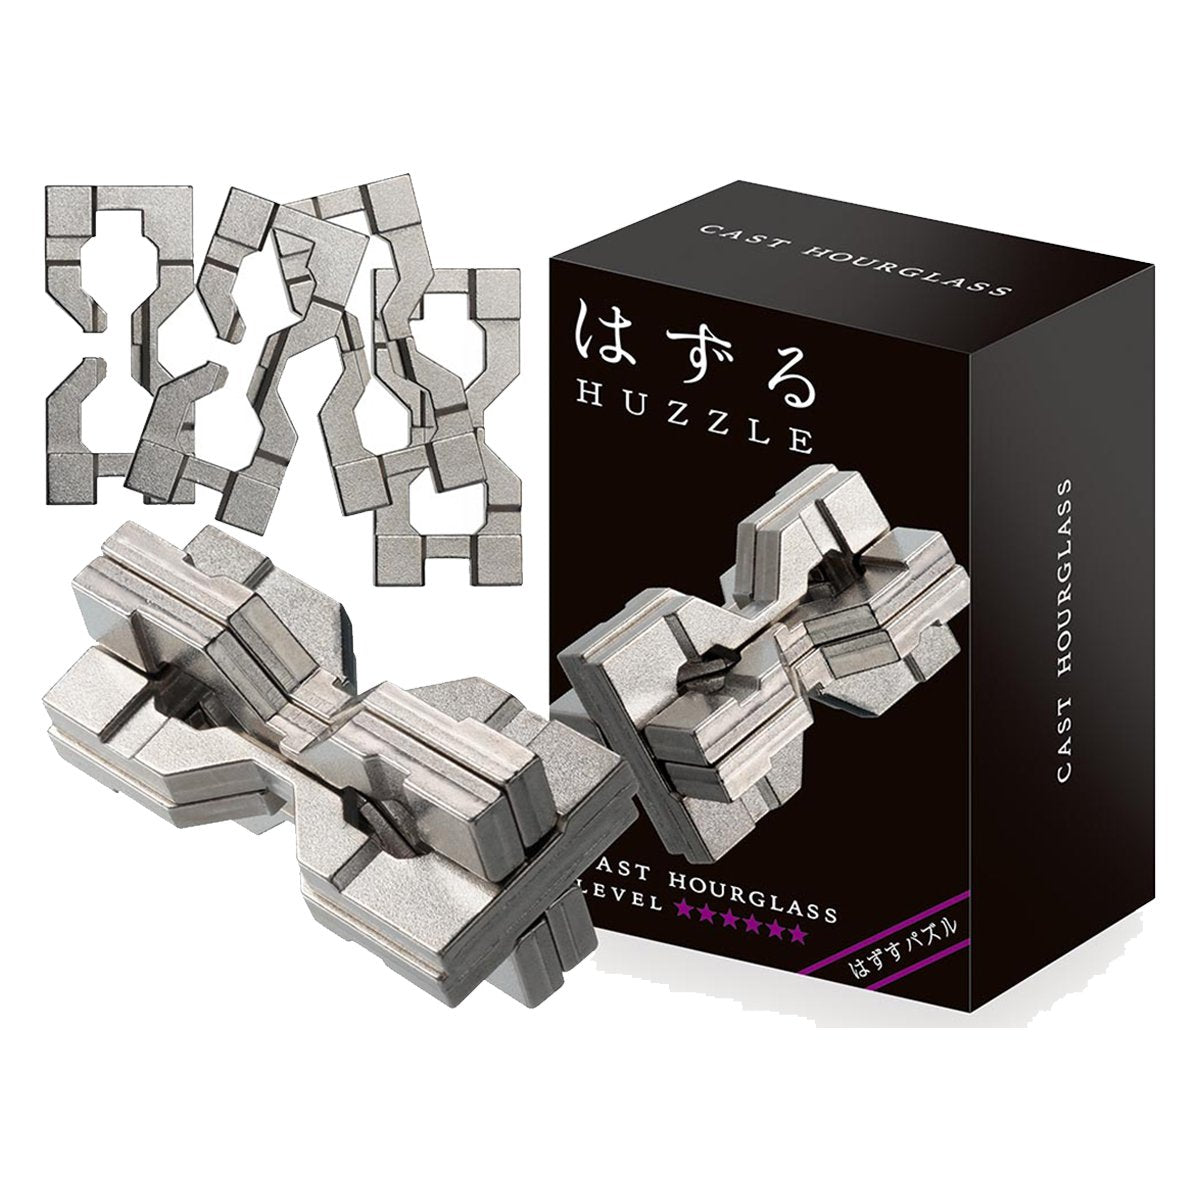 HOURGLASS - L6 Cast Puzzle - Huzzle